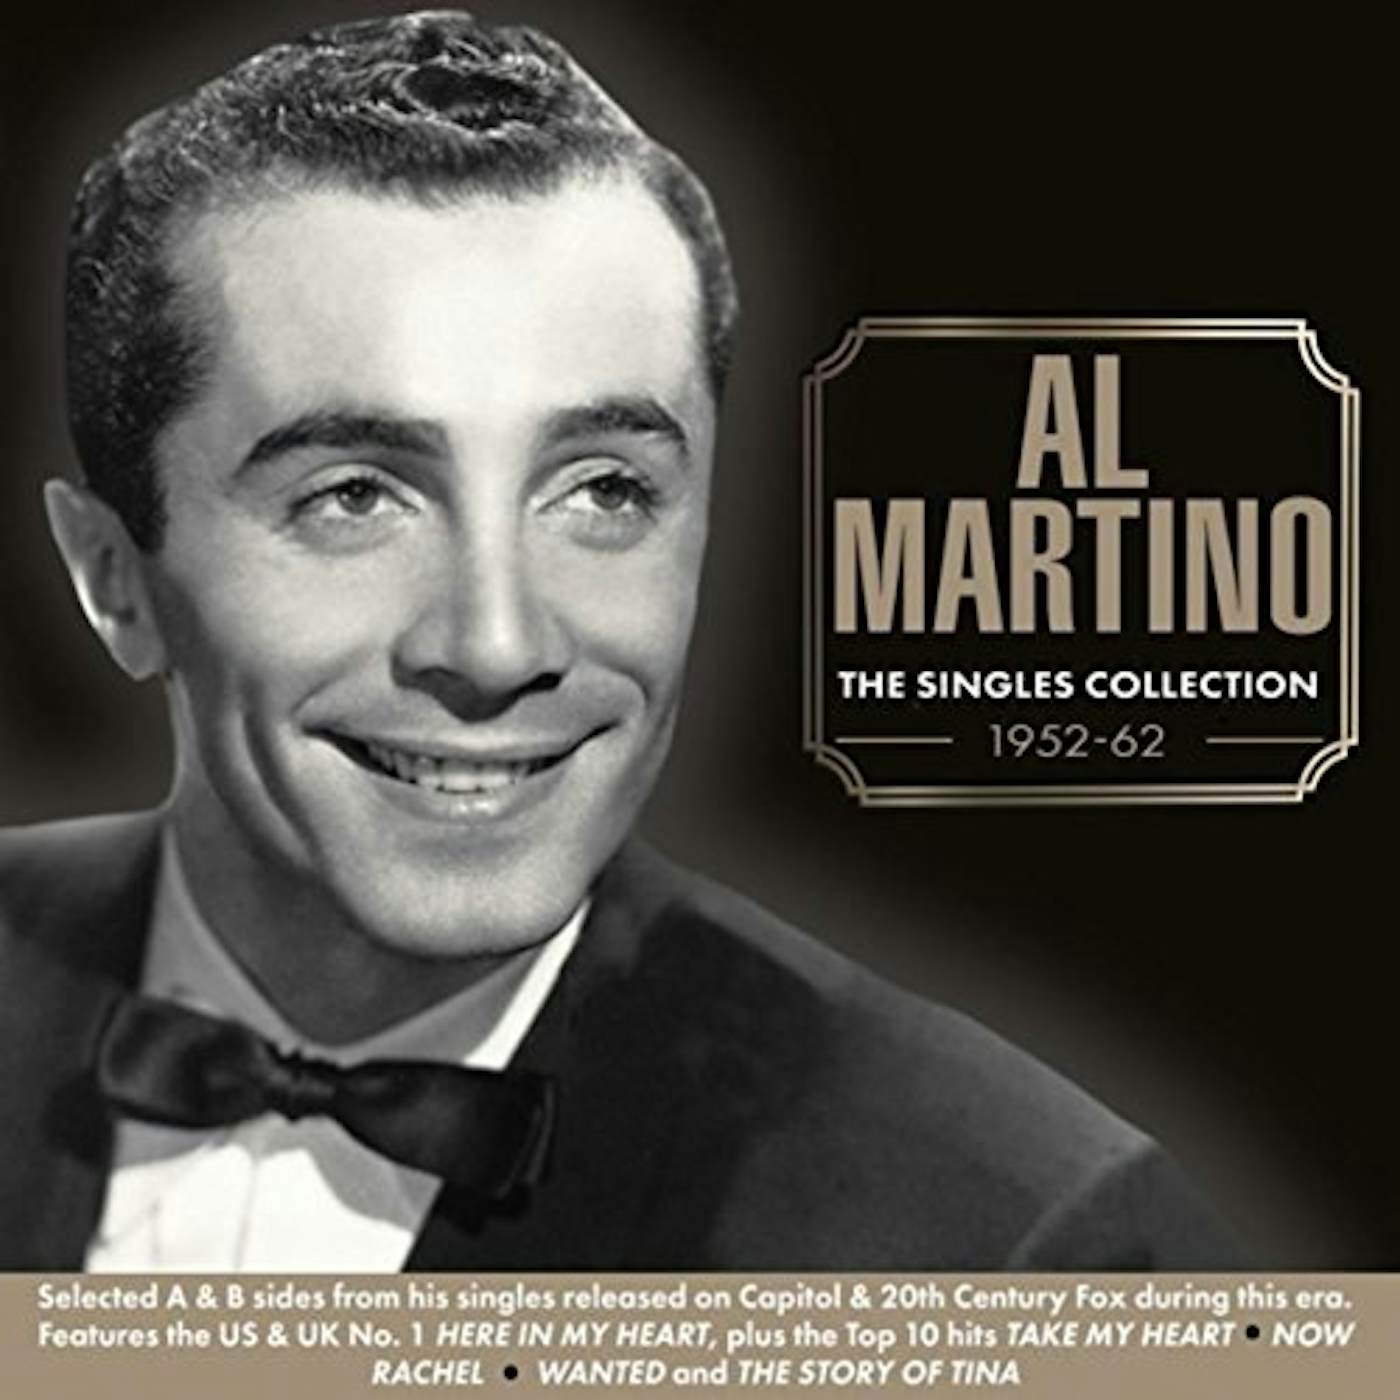 Al Martino SINGLES COLLECTION 1952-62 CD